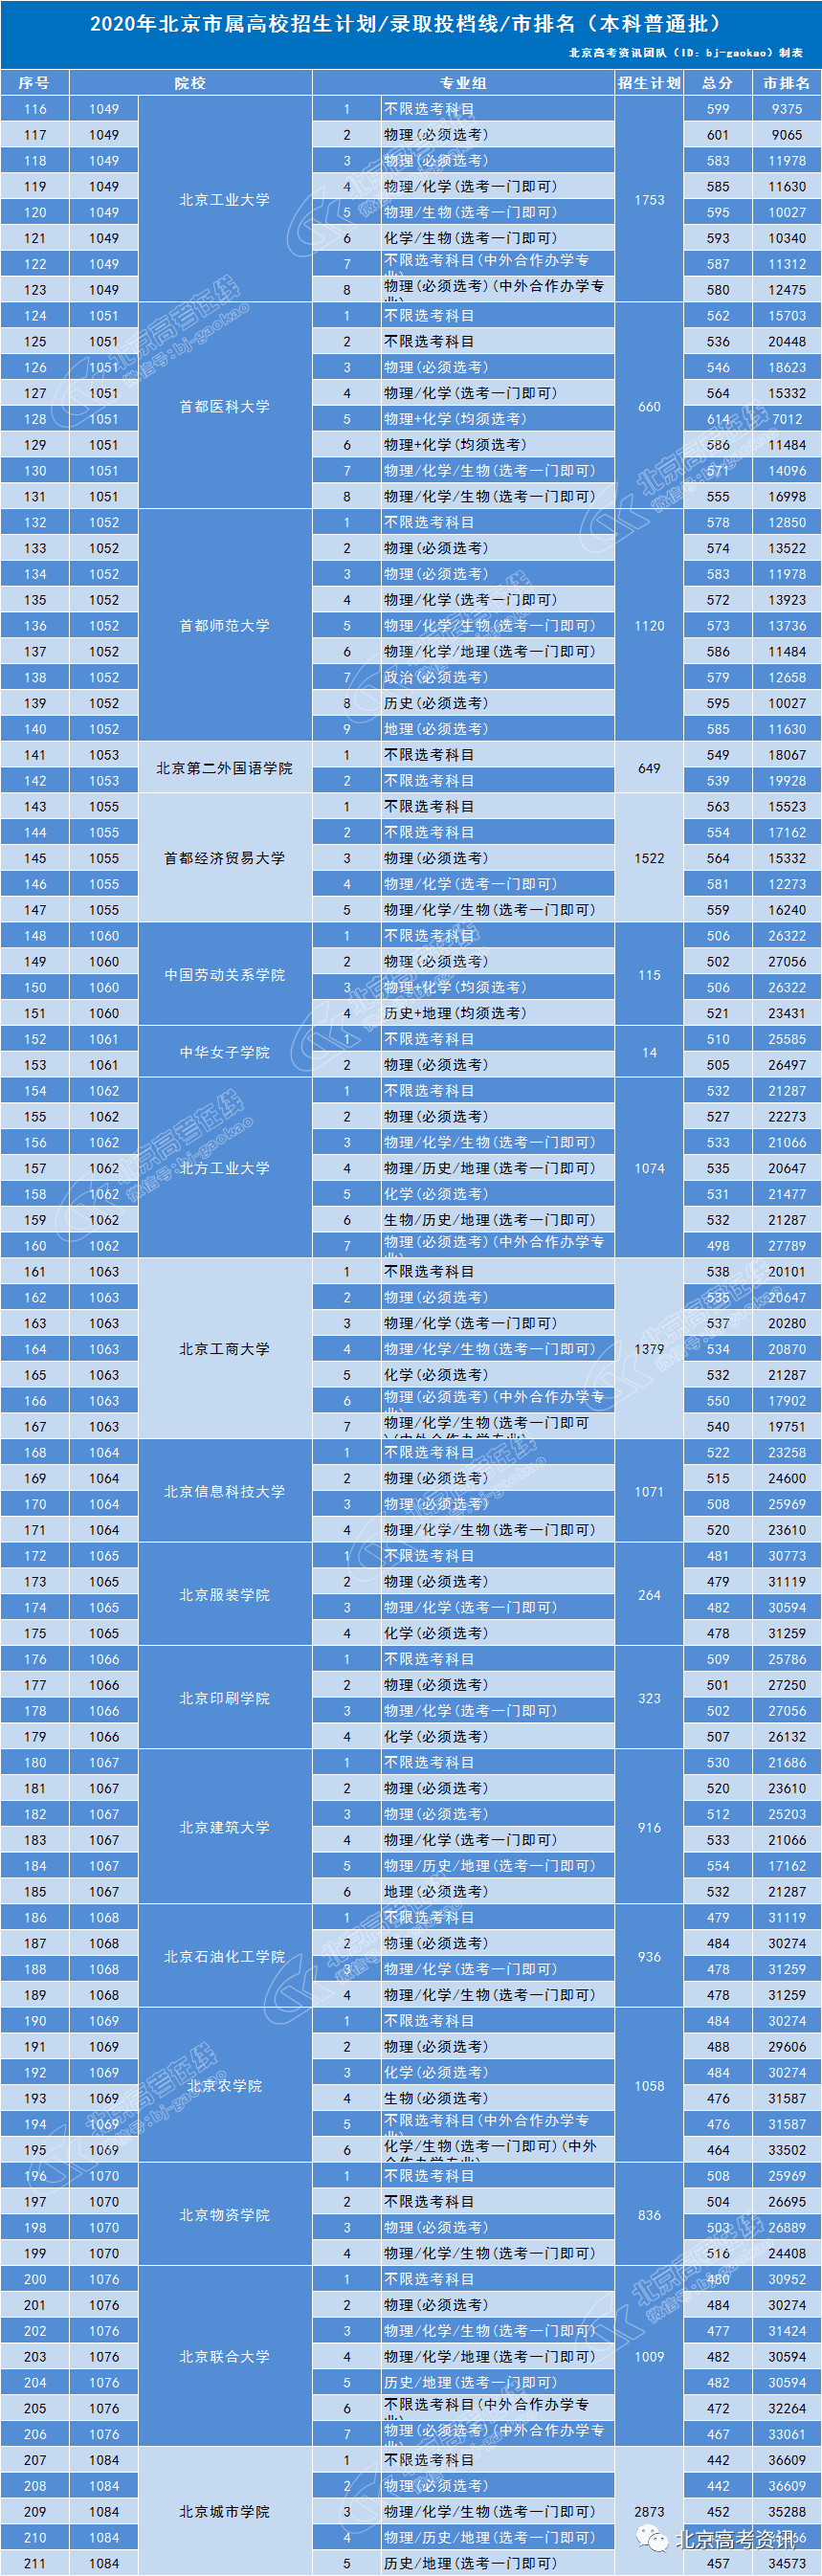 2020年北京市属高校招生计划、录取分数线